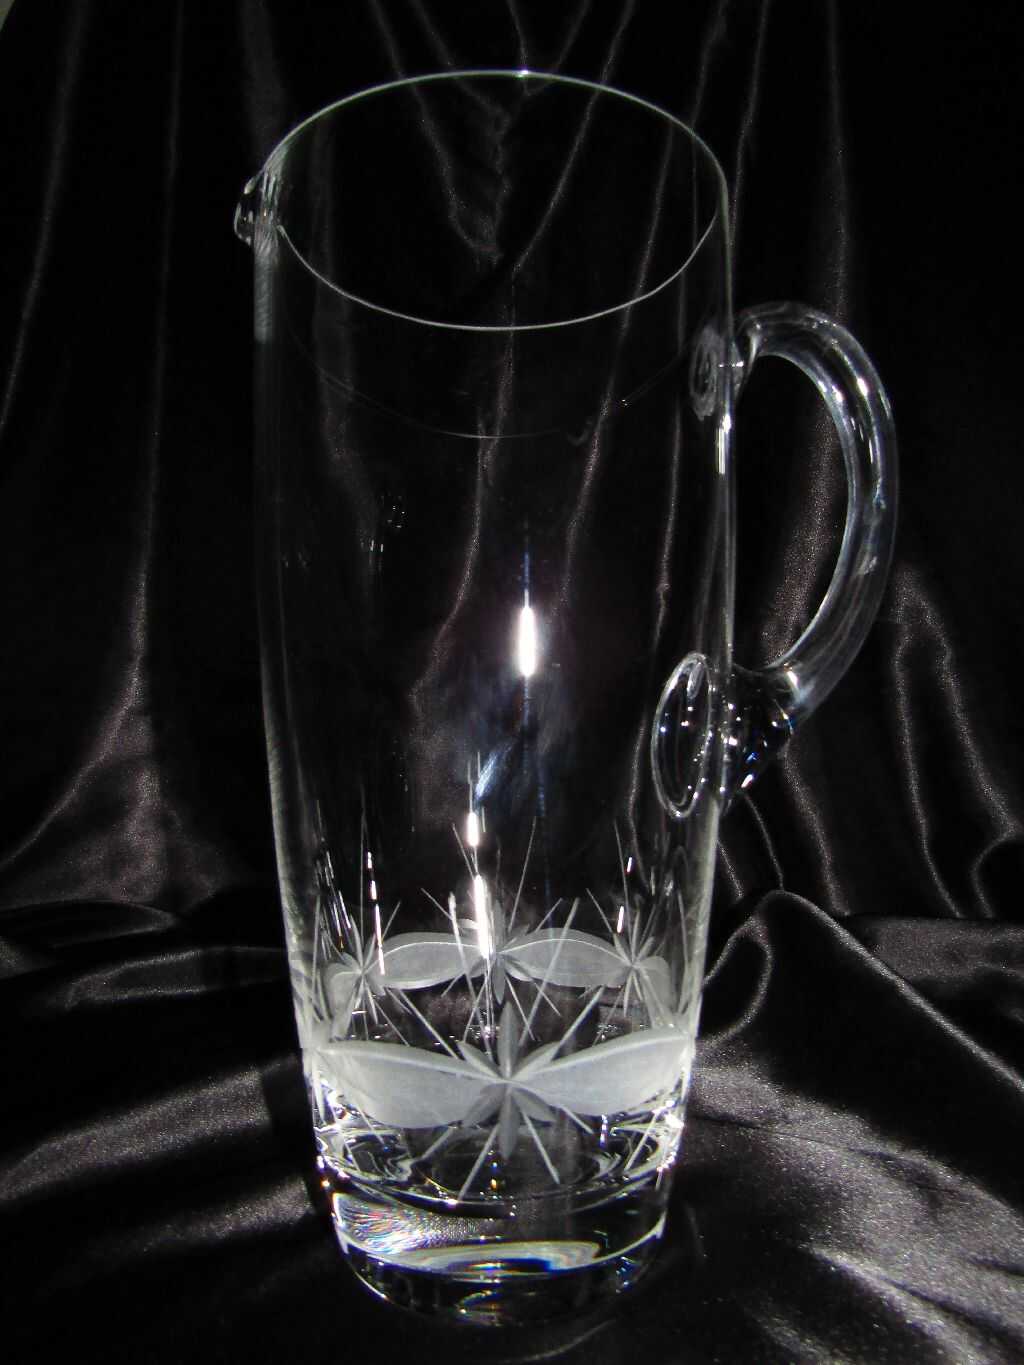 LsG-Crystal Džbán skleněný ručně broušený dekor Kanta KR-088 1500 ml.